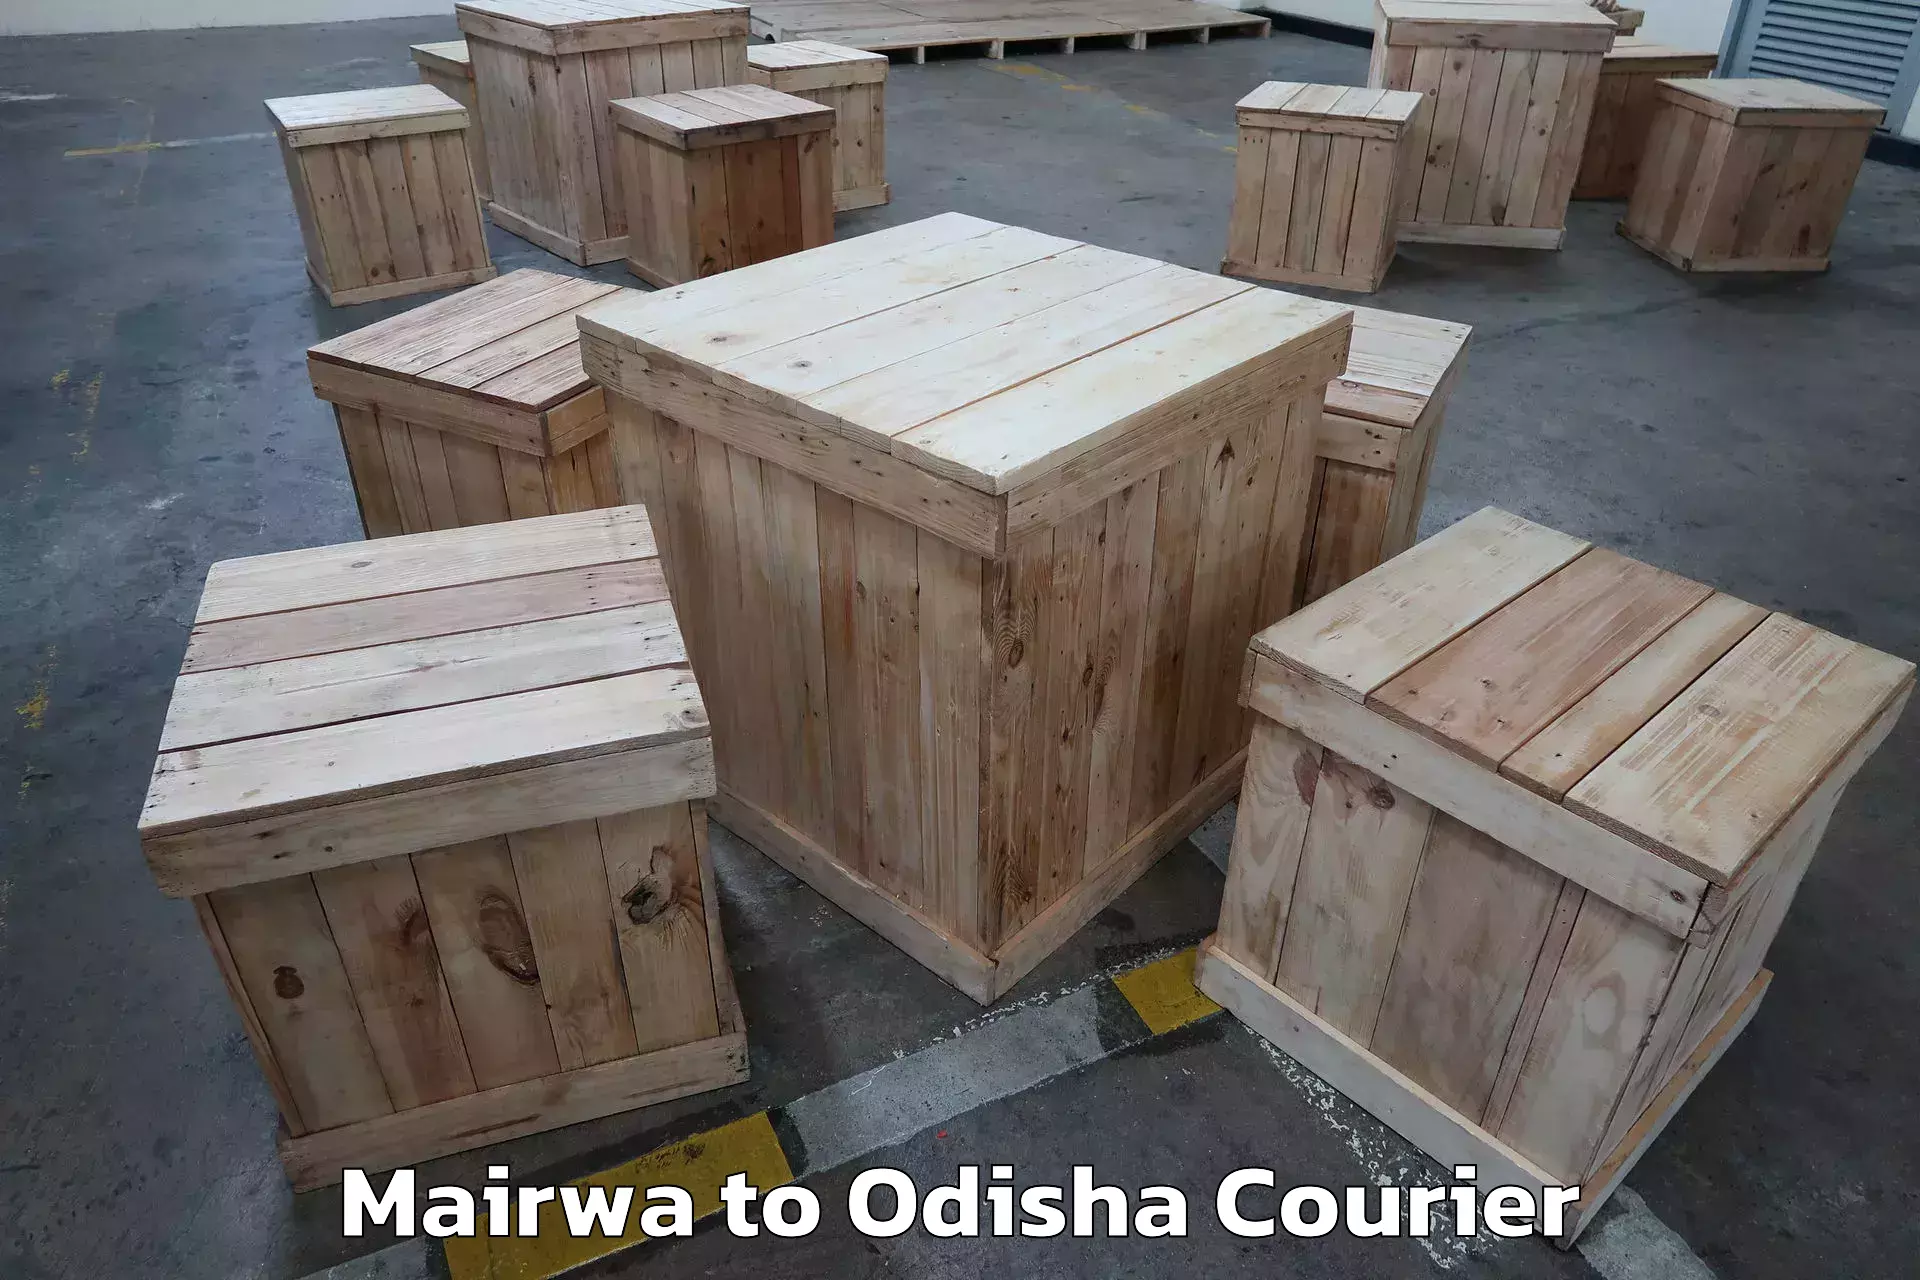 Expert moving and storage Mairwa to Baripada